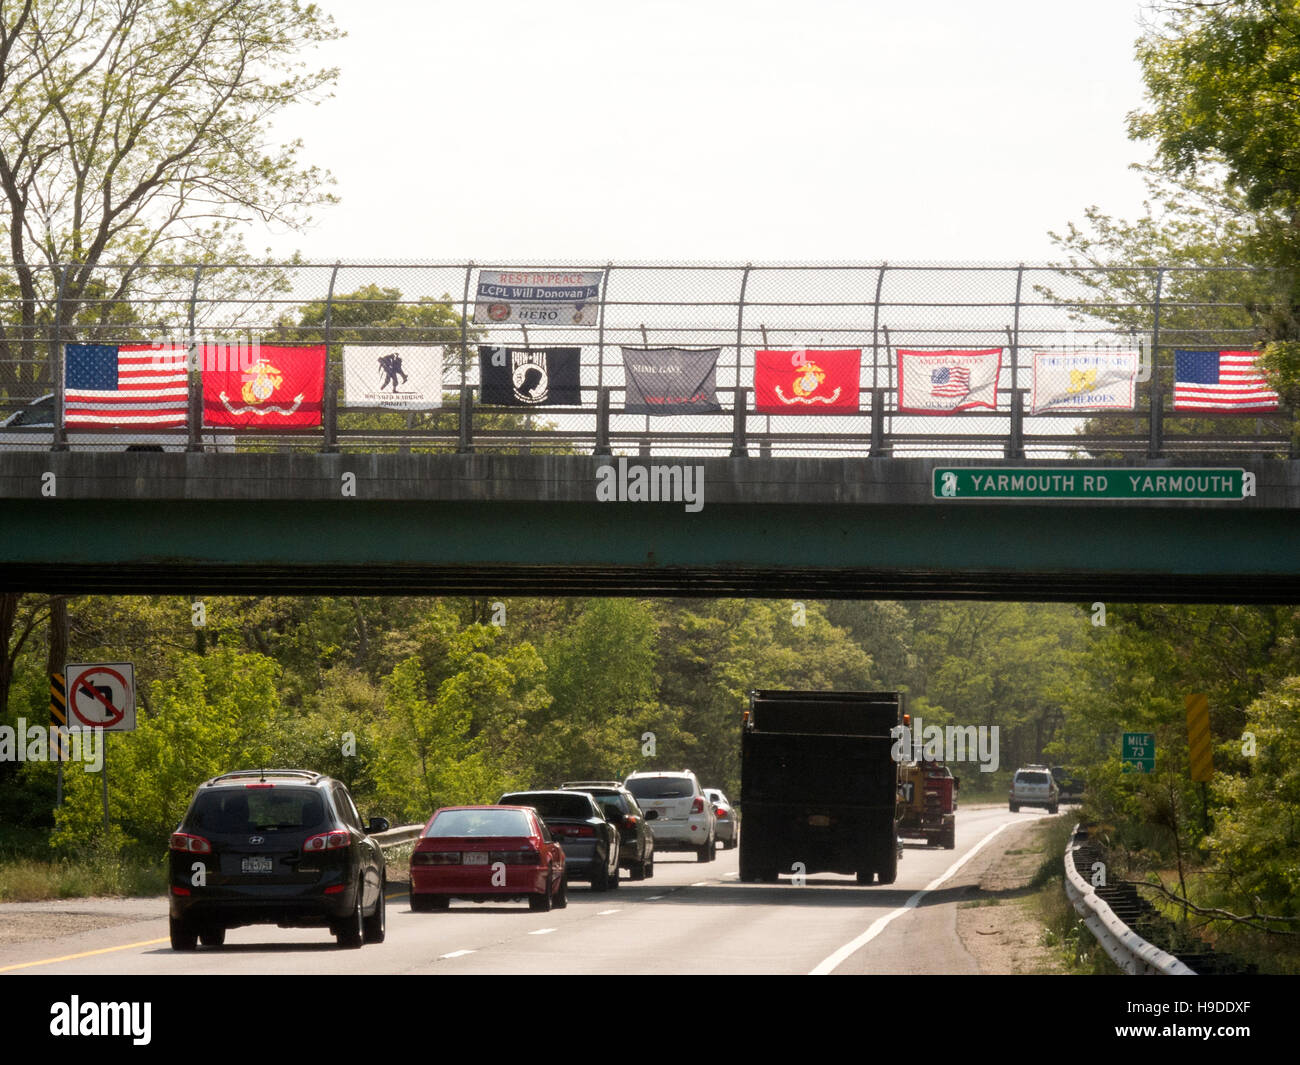 Eine US-Flagge sowie Flaggen der US militärischen Services werden auf einer Brücke über einem Massachusetts Highway unter Beachtung des Memorial Day angezeigt. Beachten Sie Prisoner Of War (POW) Flagge in Mitte. Stockfoto